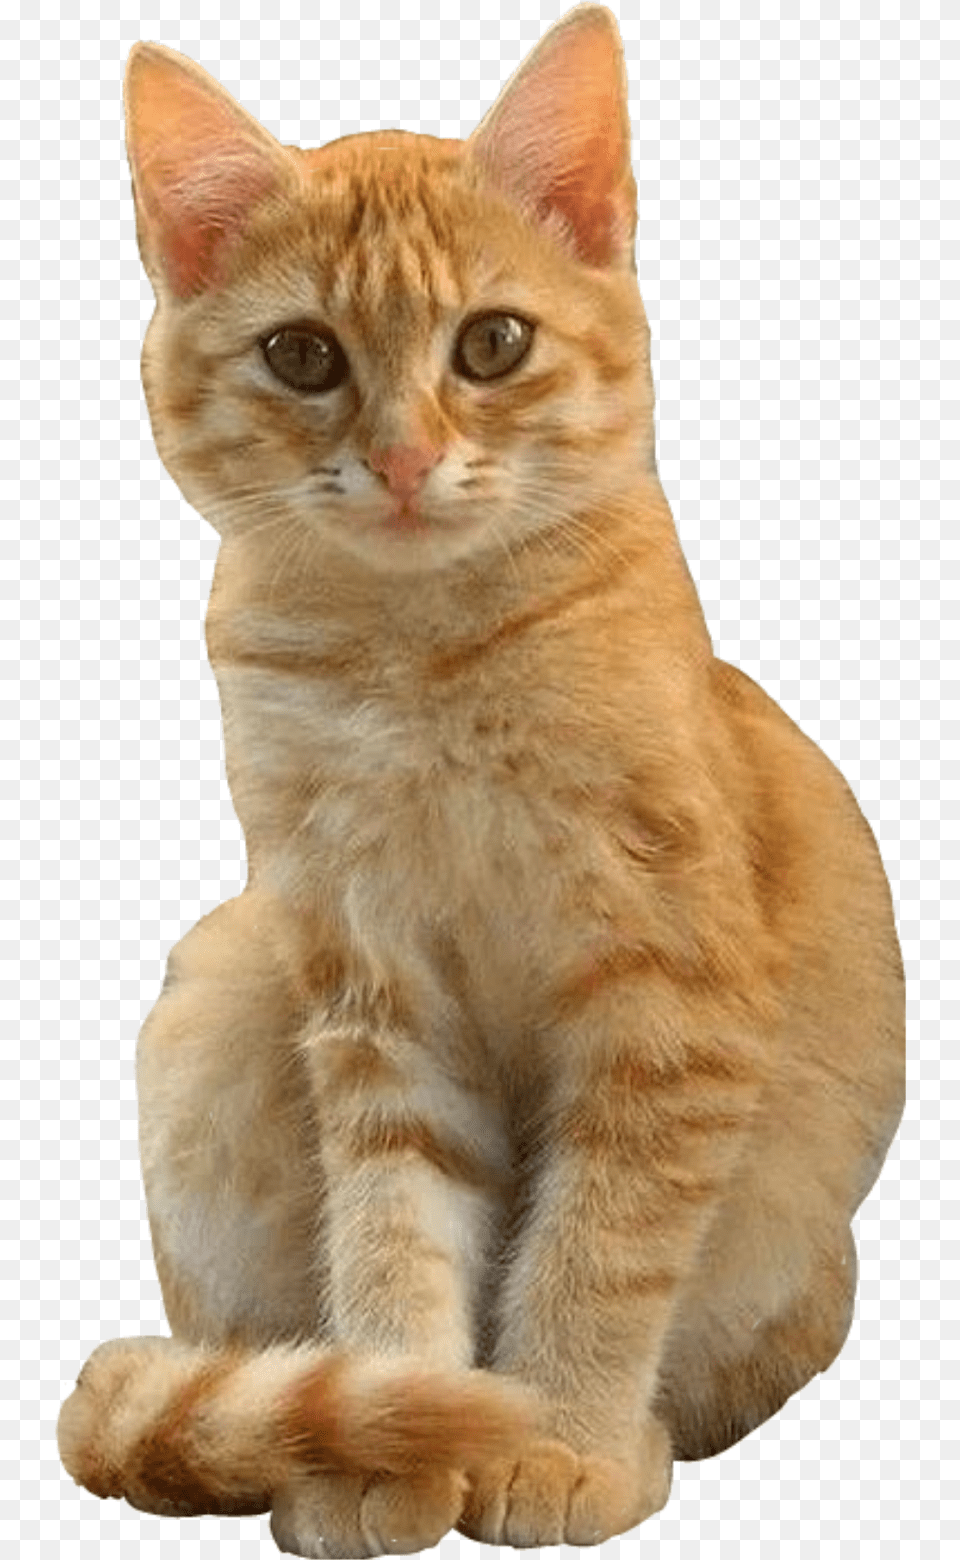 Cat Cutout Ginger Orange Sitting Freetoeditnot Gatti Arancioni E Bianchi, Abyssinian, Animal, Mammal, Pet Png